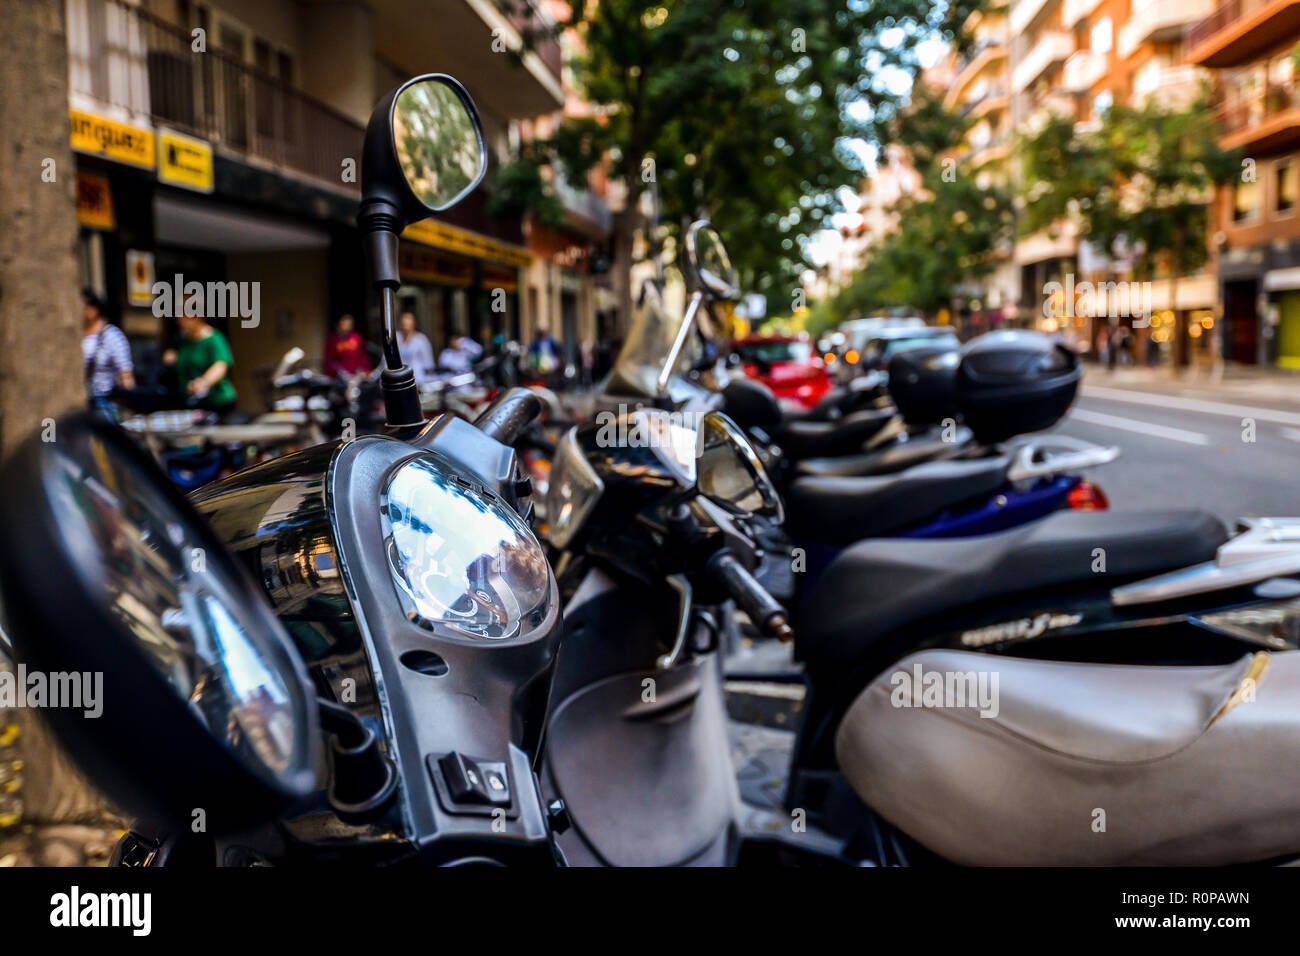 Barcelona/Spanien - 11/6/18 - Motorroller bis in der Straße in Barcelona - Spanien Stockfoto